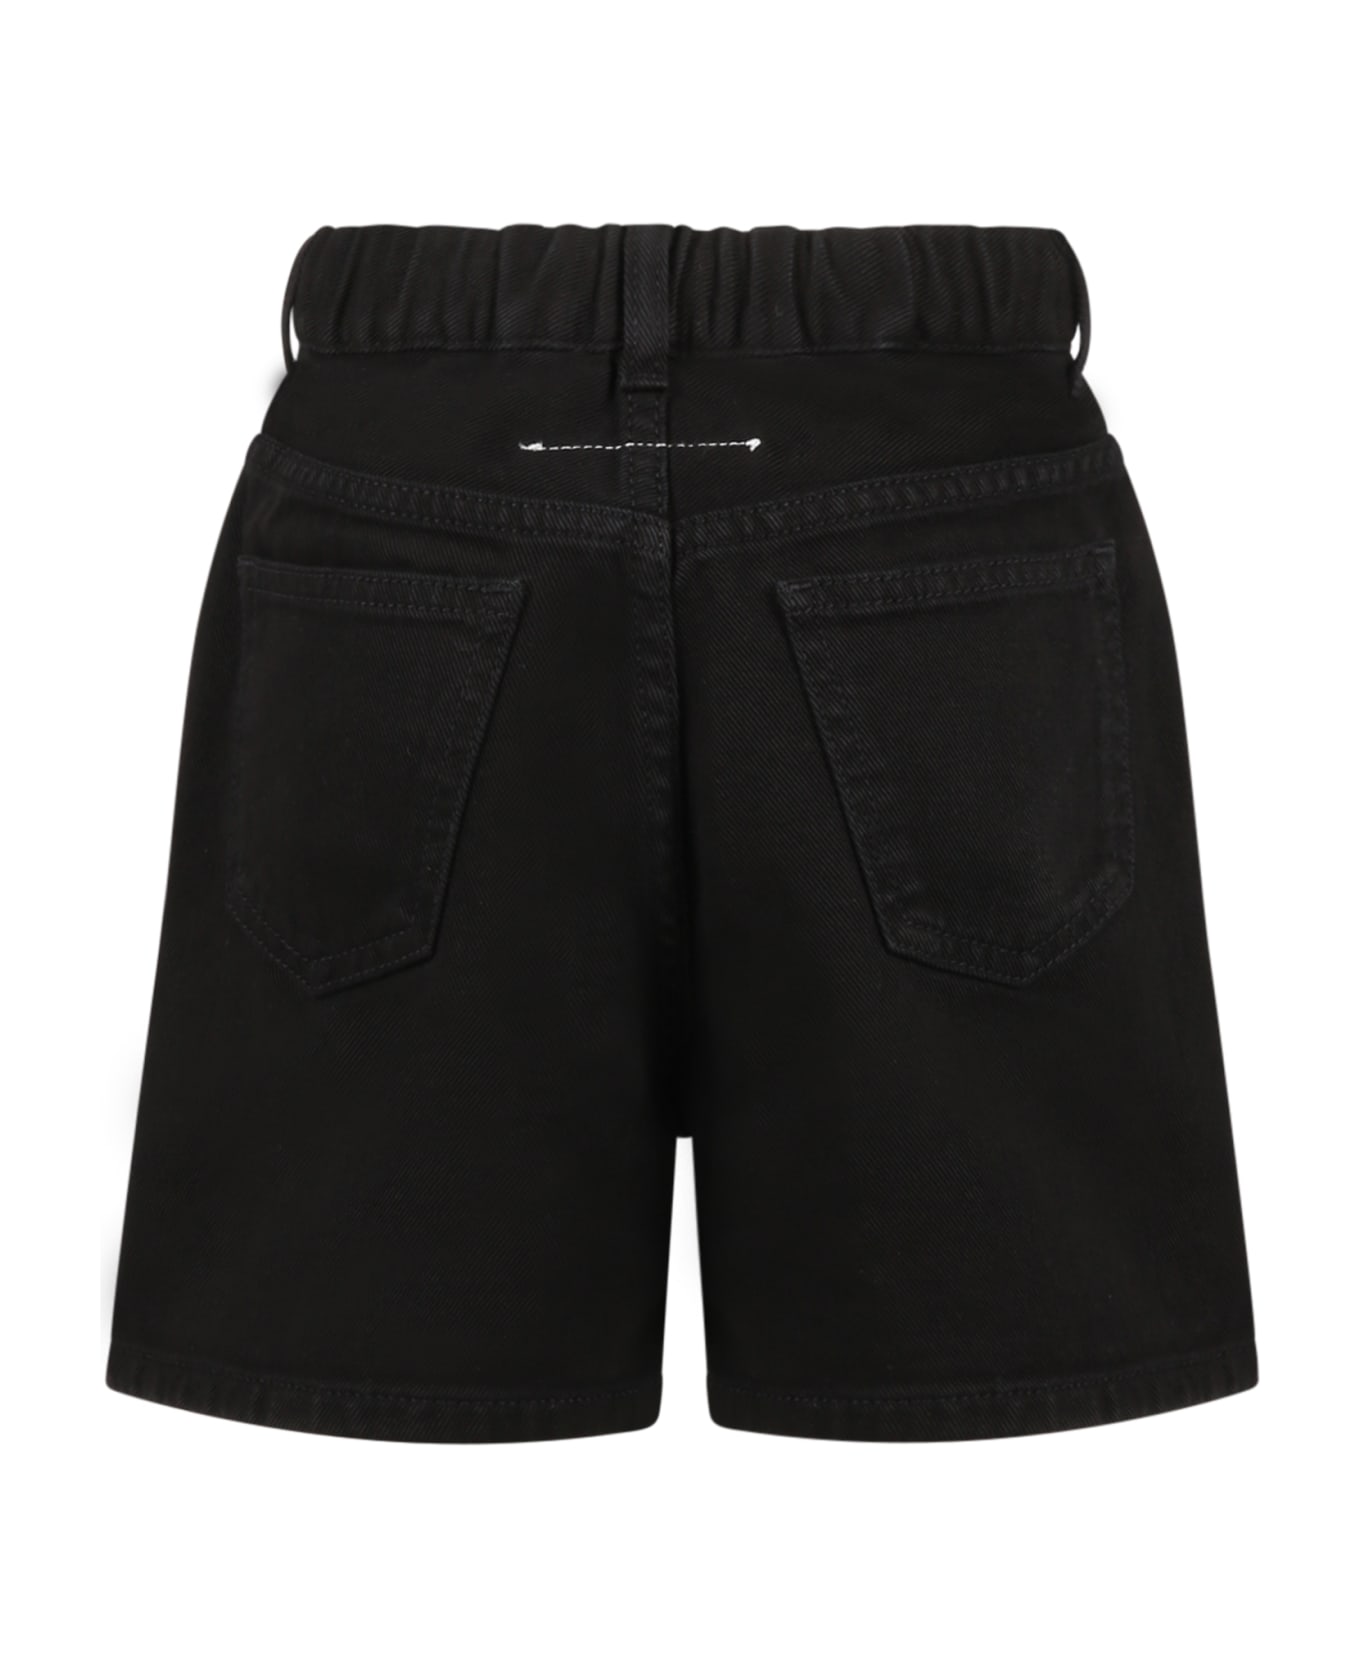 MM6 Maison Margiela Black Shorts For Girl - Black